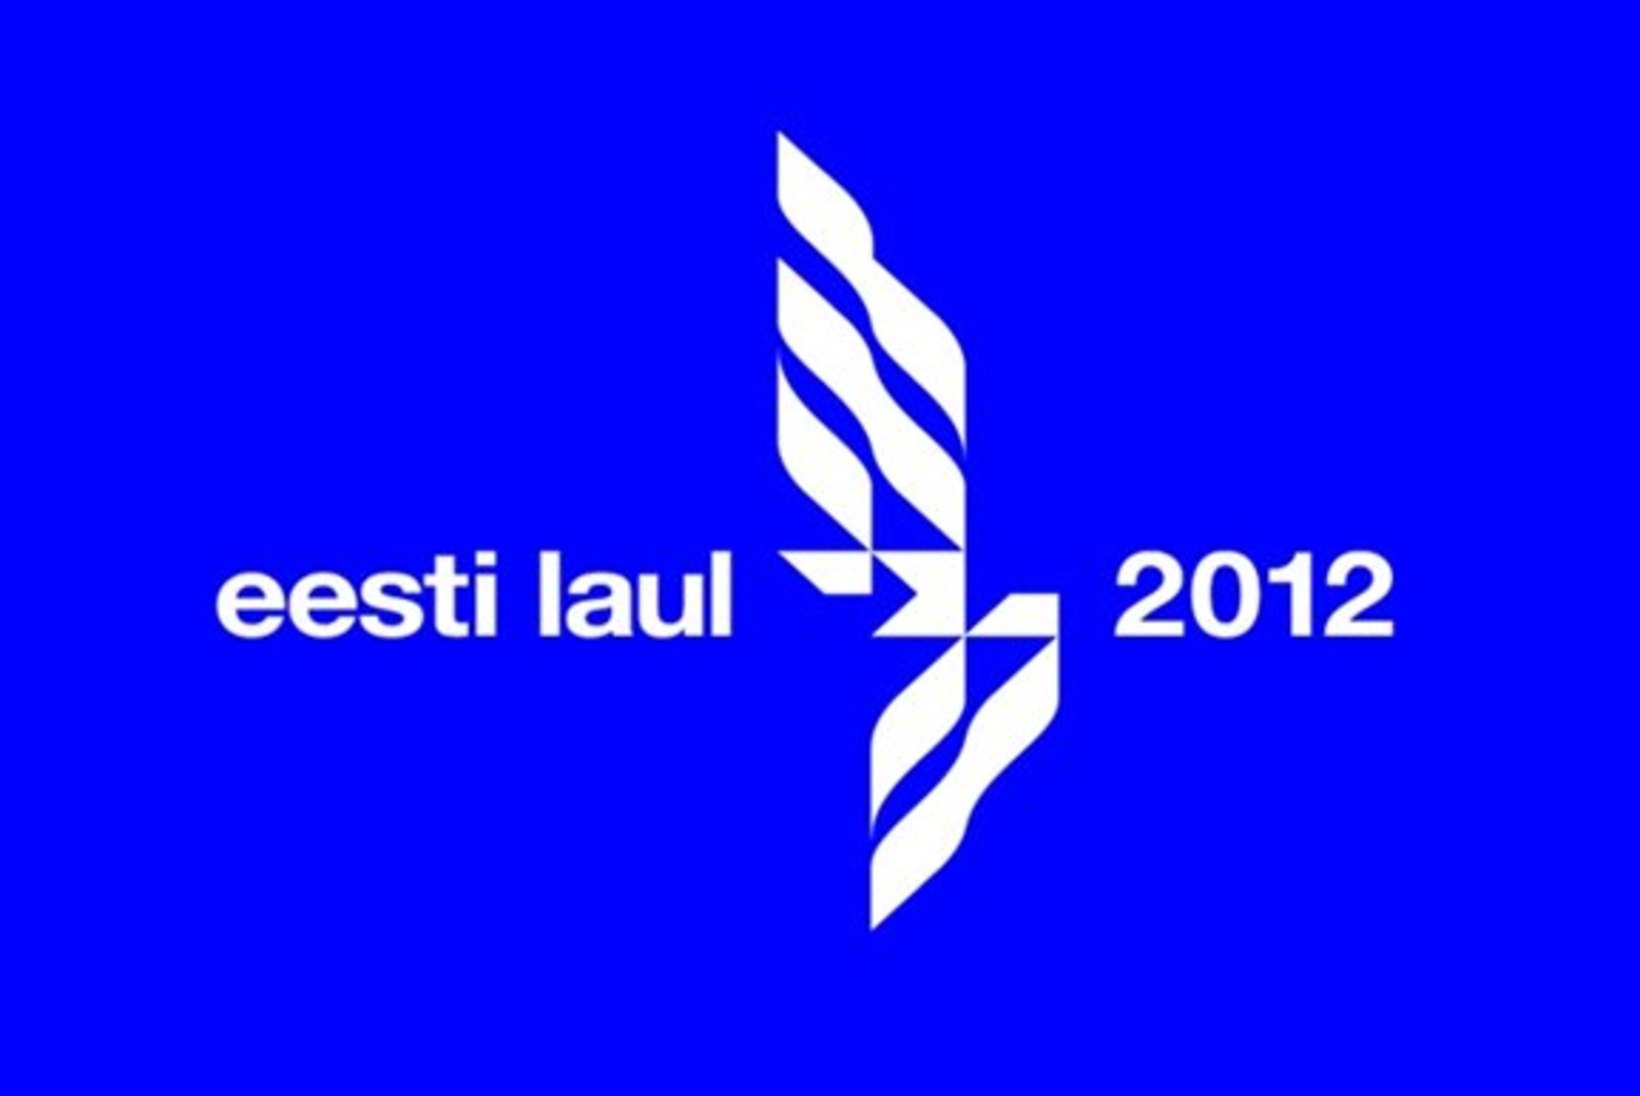 "Eesti laul 2012": neid võistluspalu on võimalik juba kuulda!